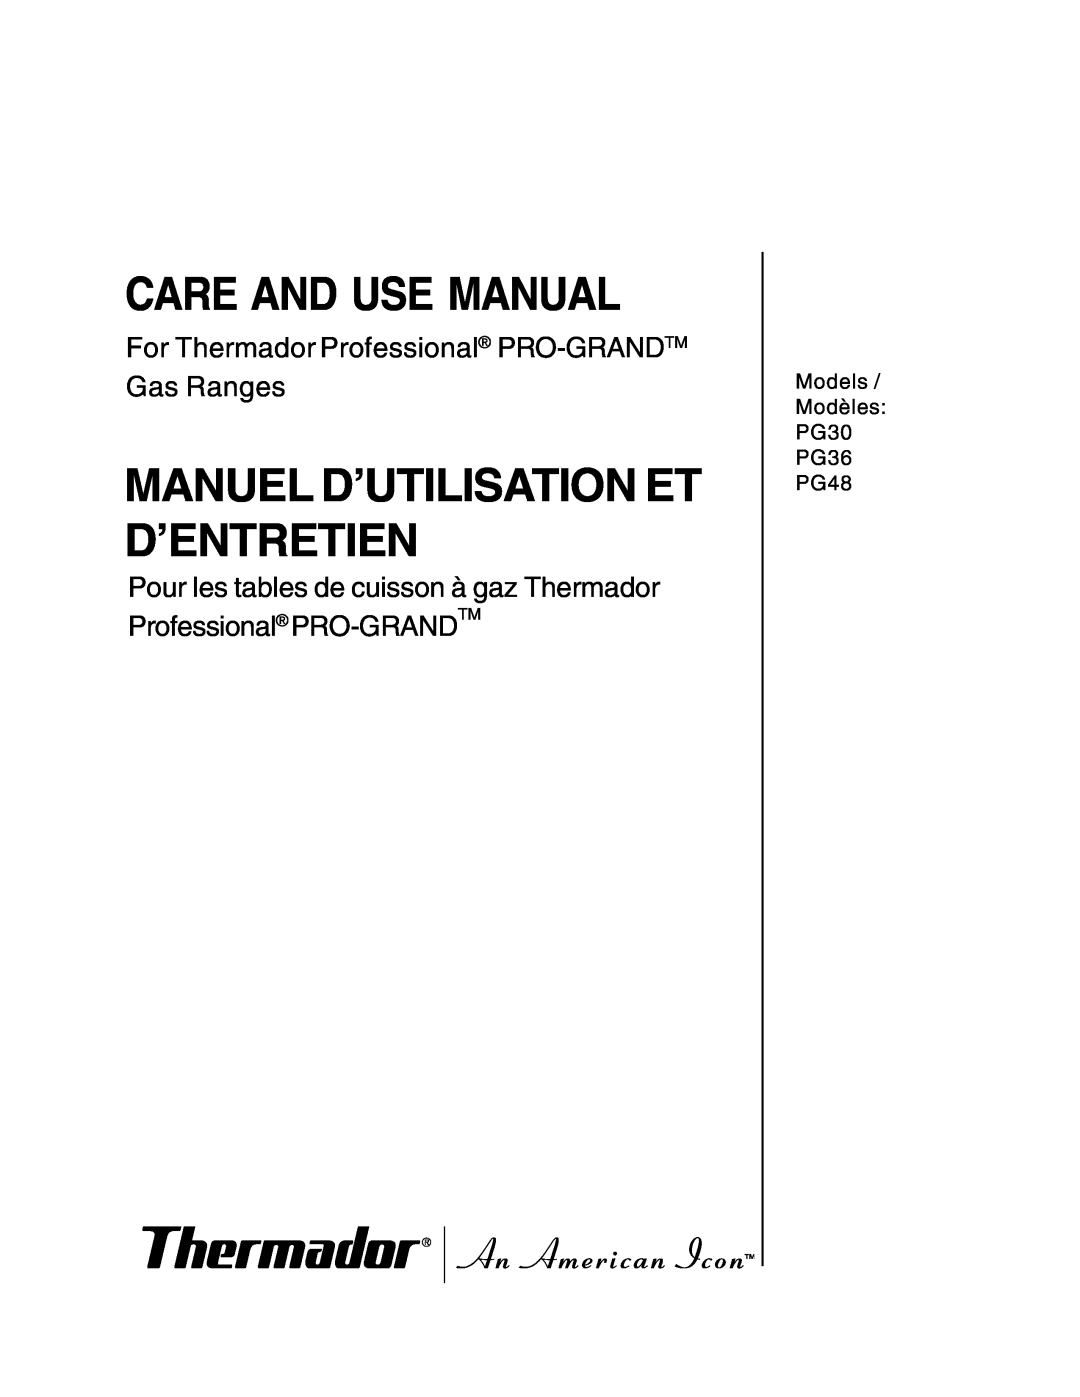 Thermador PG30 manuel dutilisation Care And Use Manual, Manuel D’Utilisation Et D’Entretien 